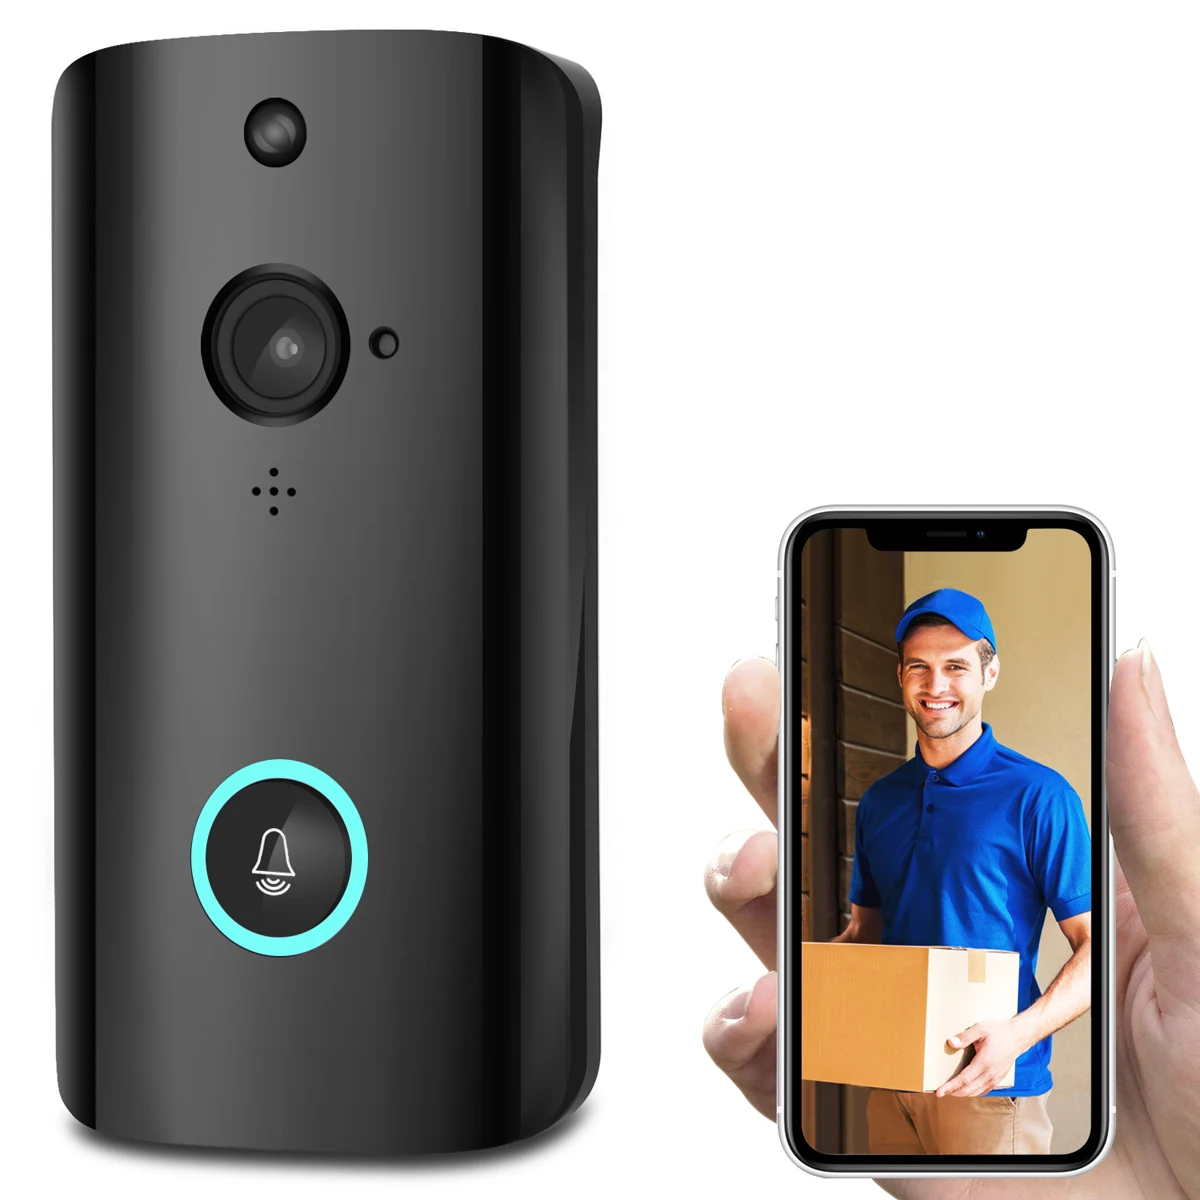 Беспроводной WiFi видео дверной звонок смартфон дверной звонок внутренняя безопасность Камера звонок